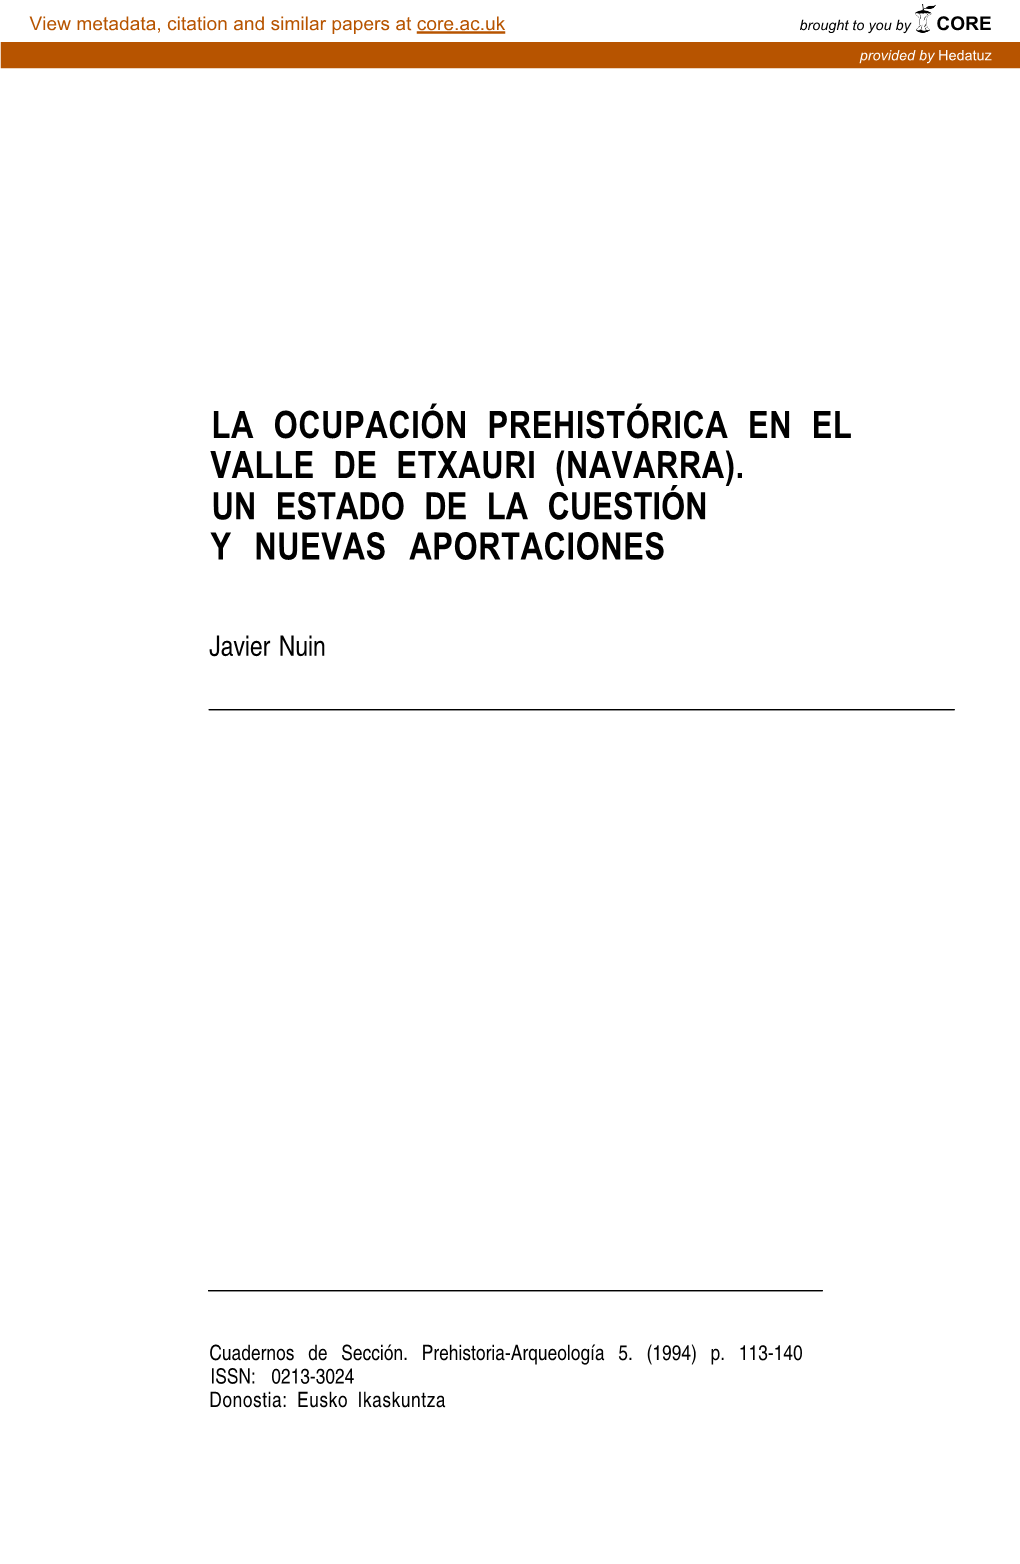 La Ocupación Prehistórica En El Valle De Etxauri (Navarra). Un Estado De La Cuestión Y Nuevas Aportaciones